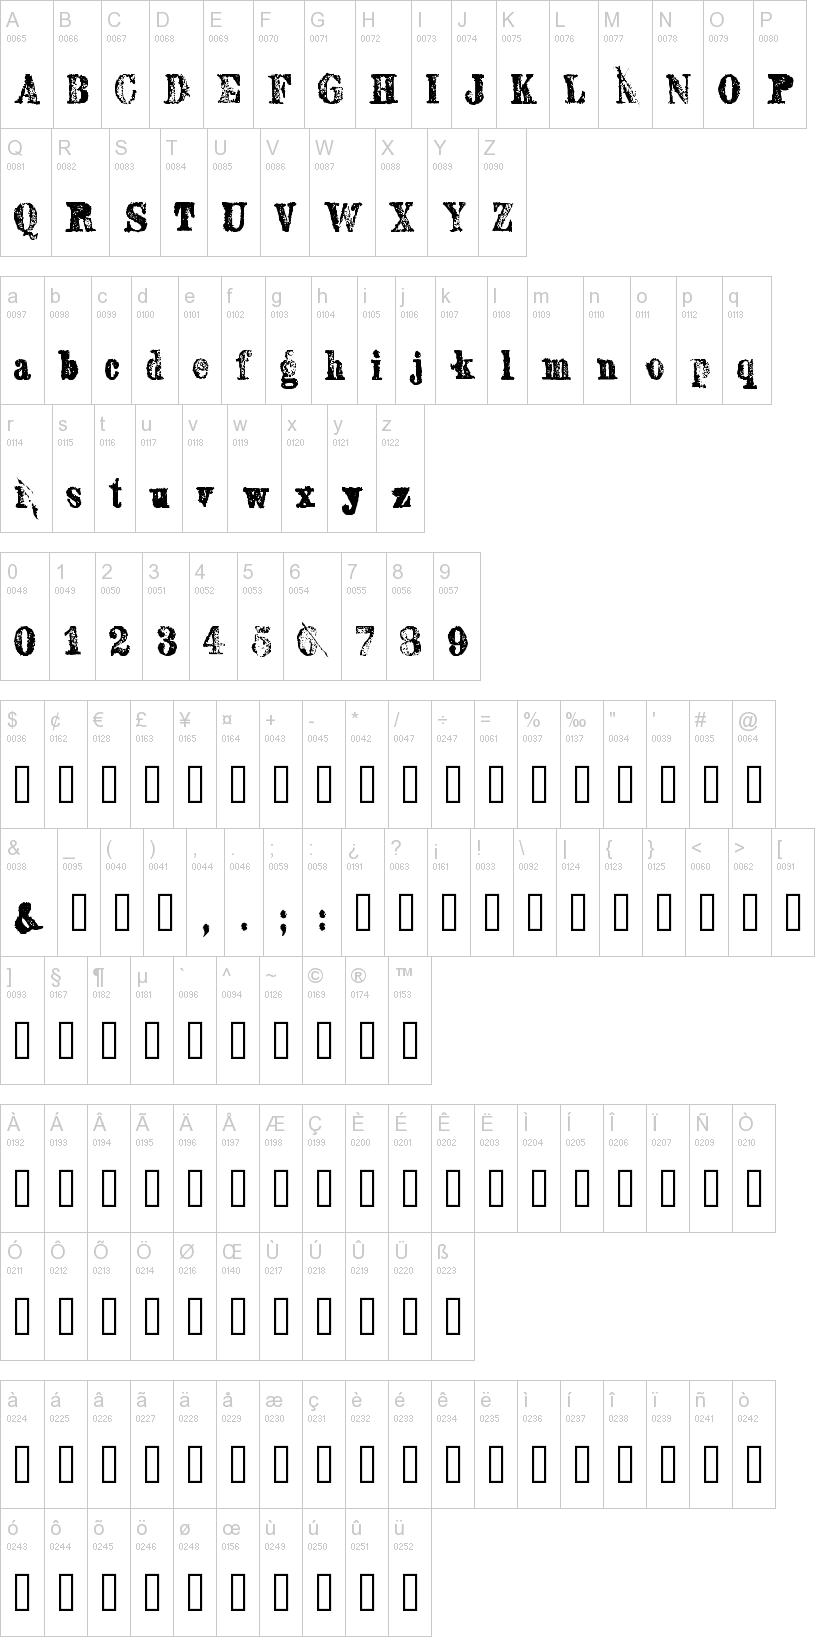 Sexton Serif